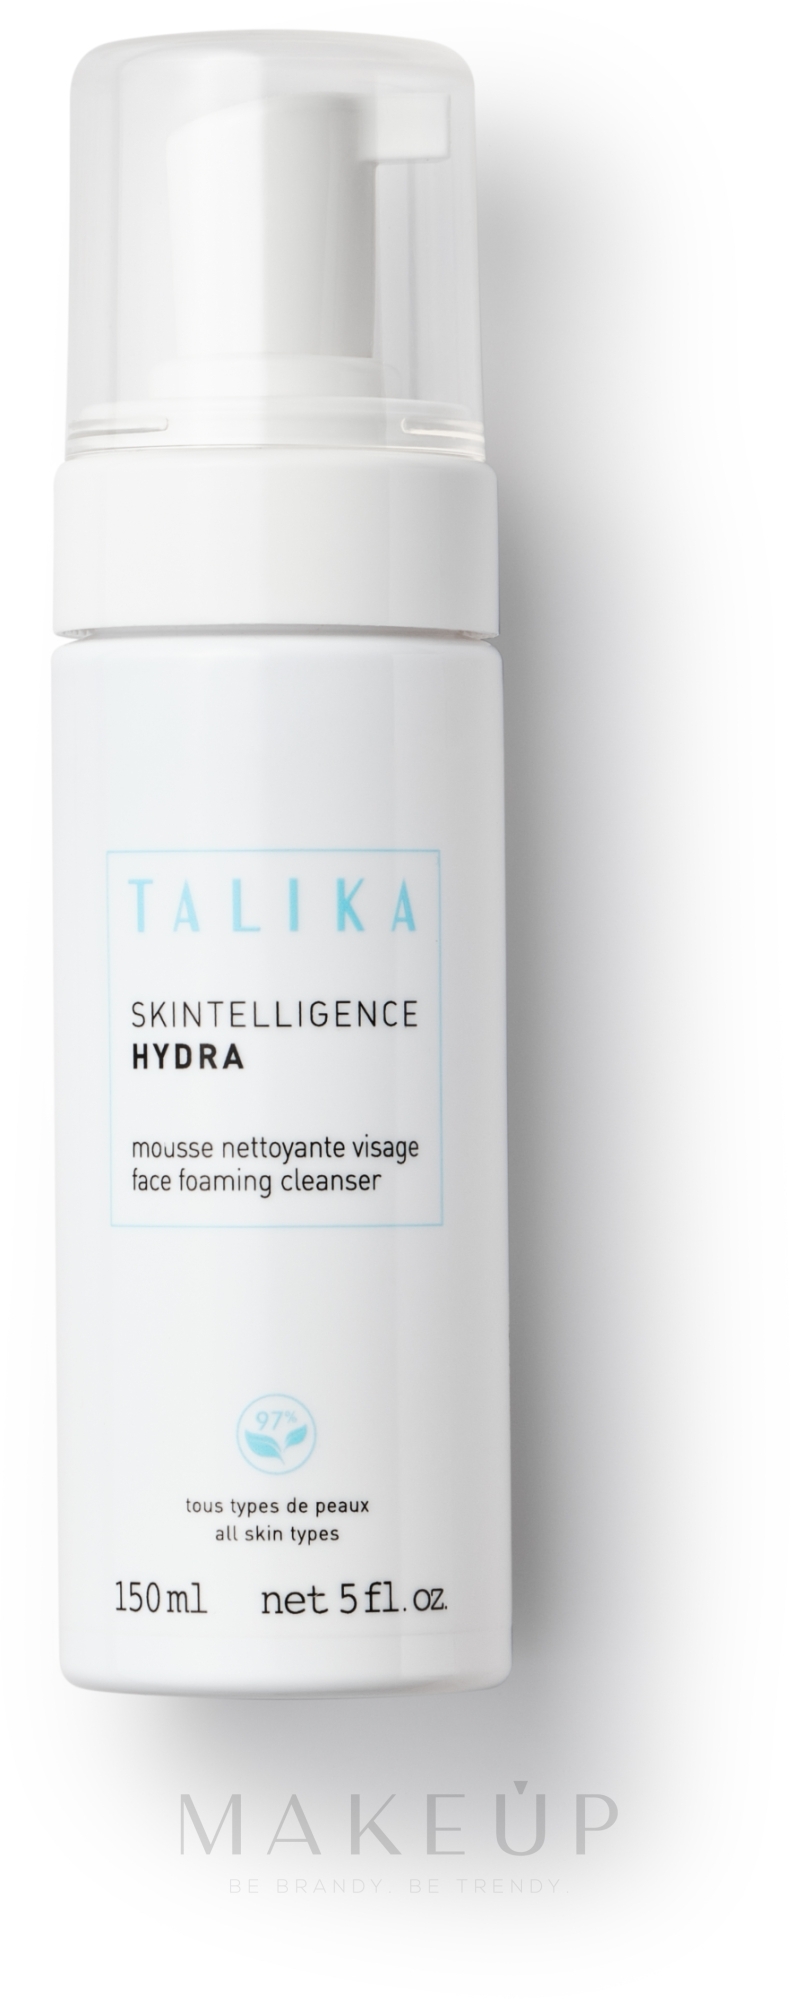 Feuchtigkeitsspendender Gesichtsreinigungsschaum - Talika Skintelligence Hydra Face Foaming Cleanser — Bild 150 ml